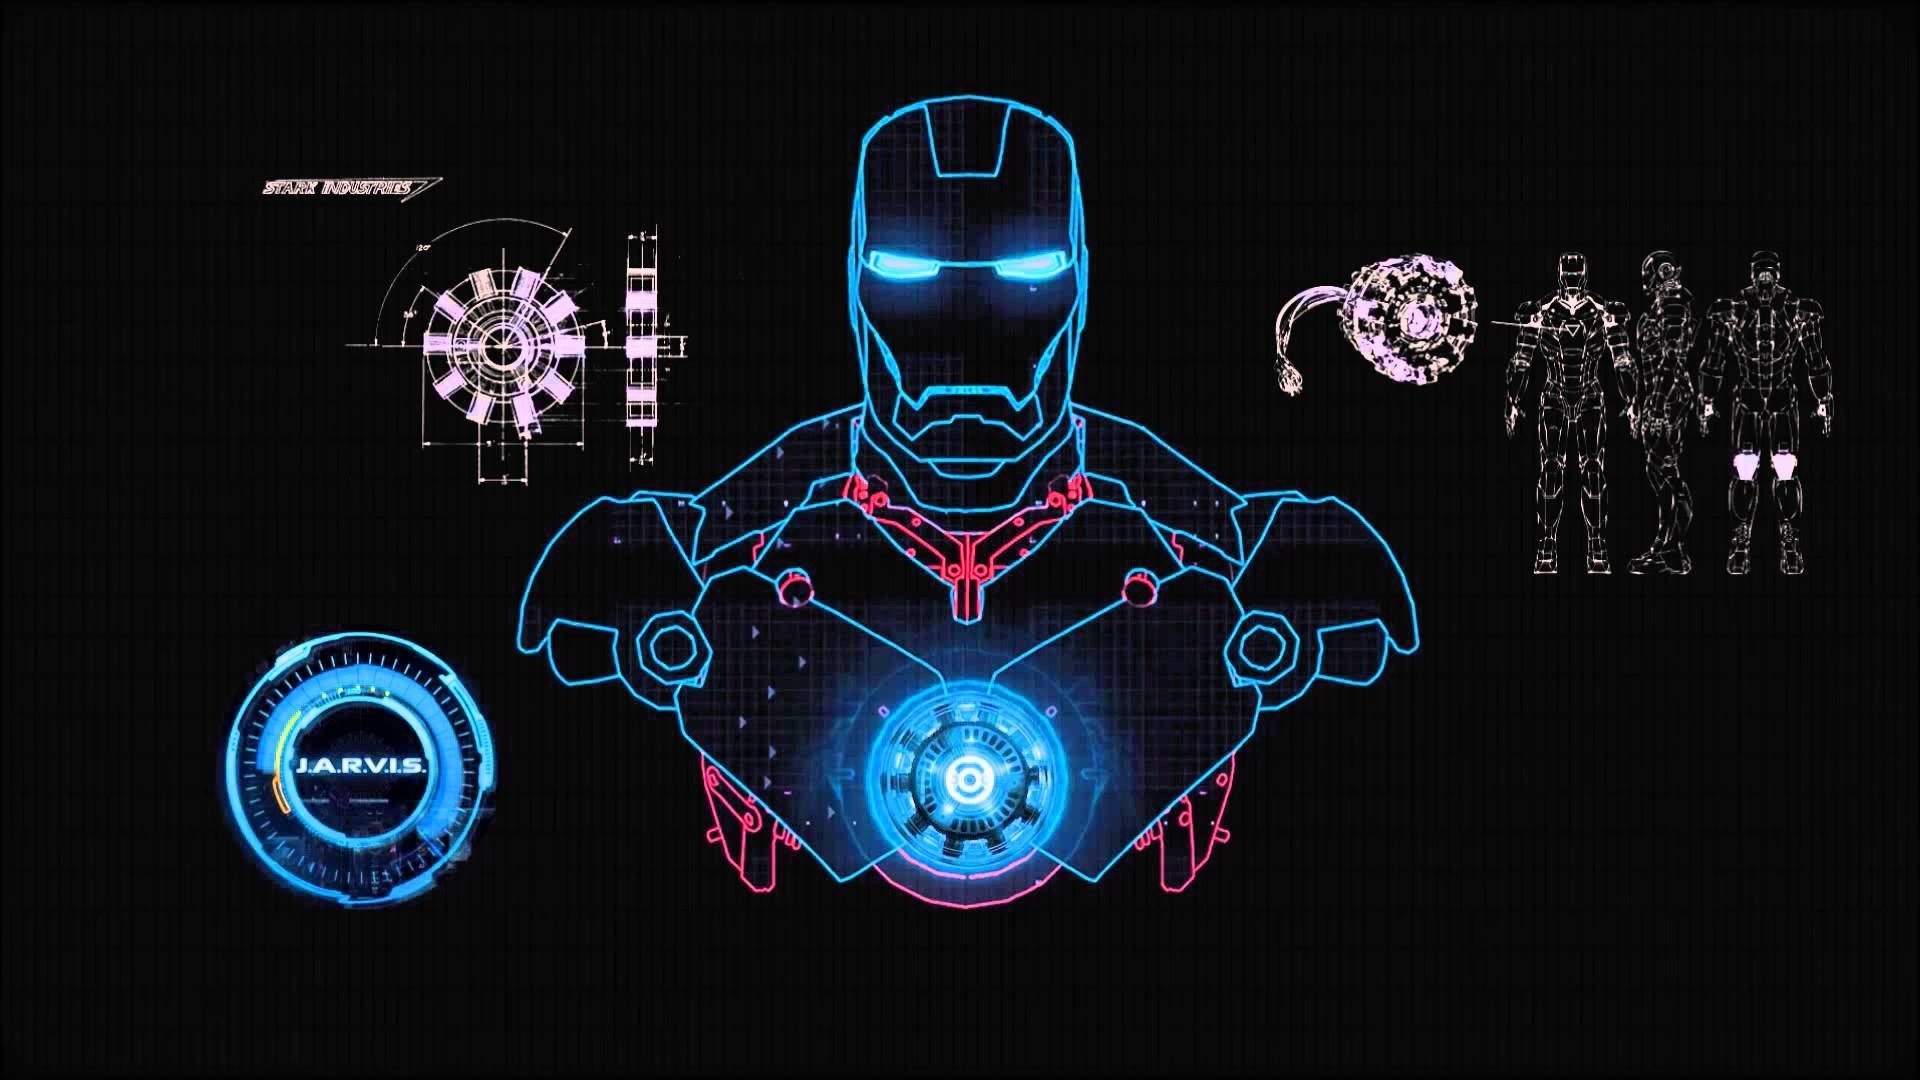 J.a.r.v.i.s. Iron Man - avenger